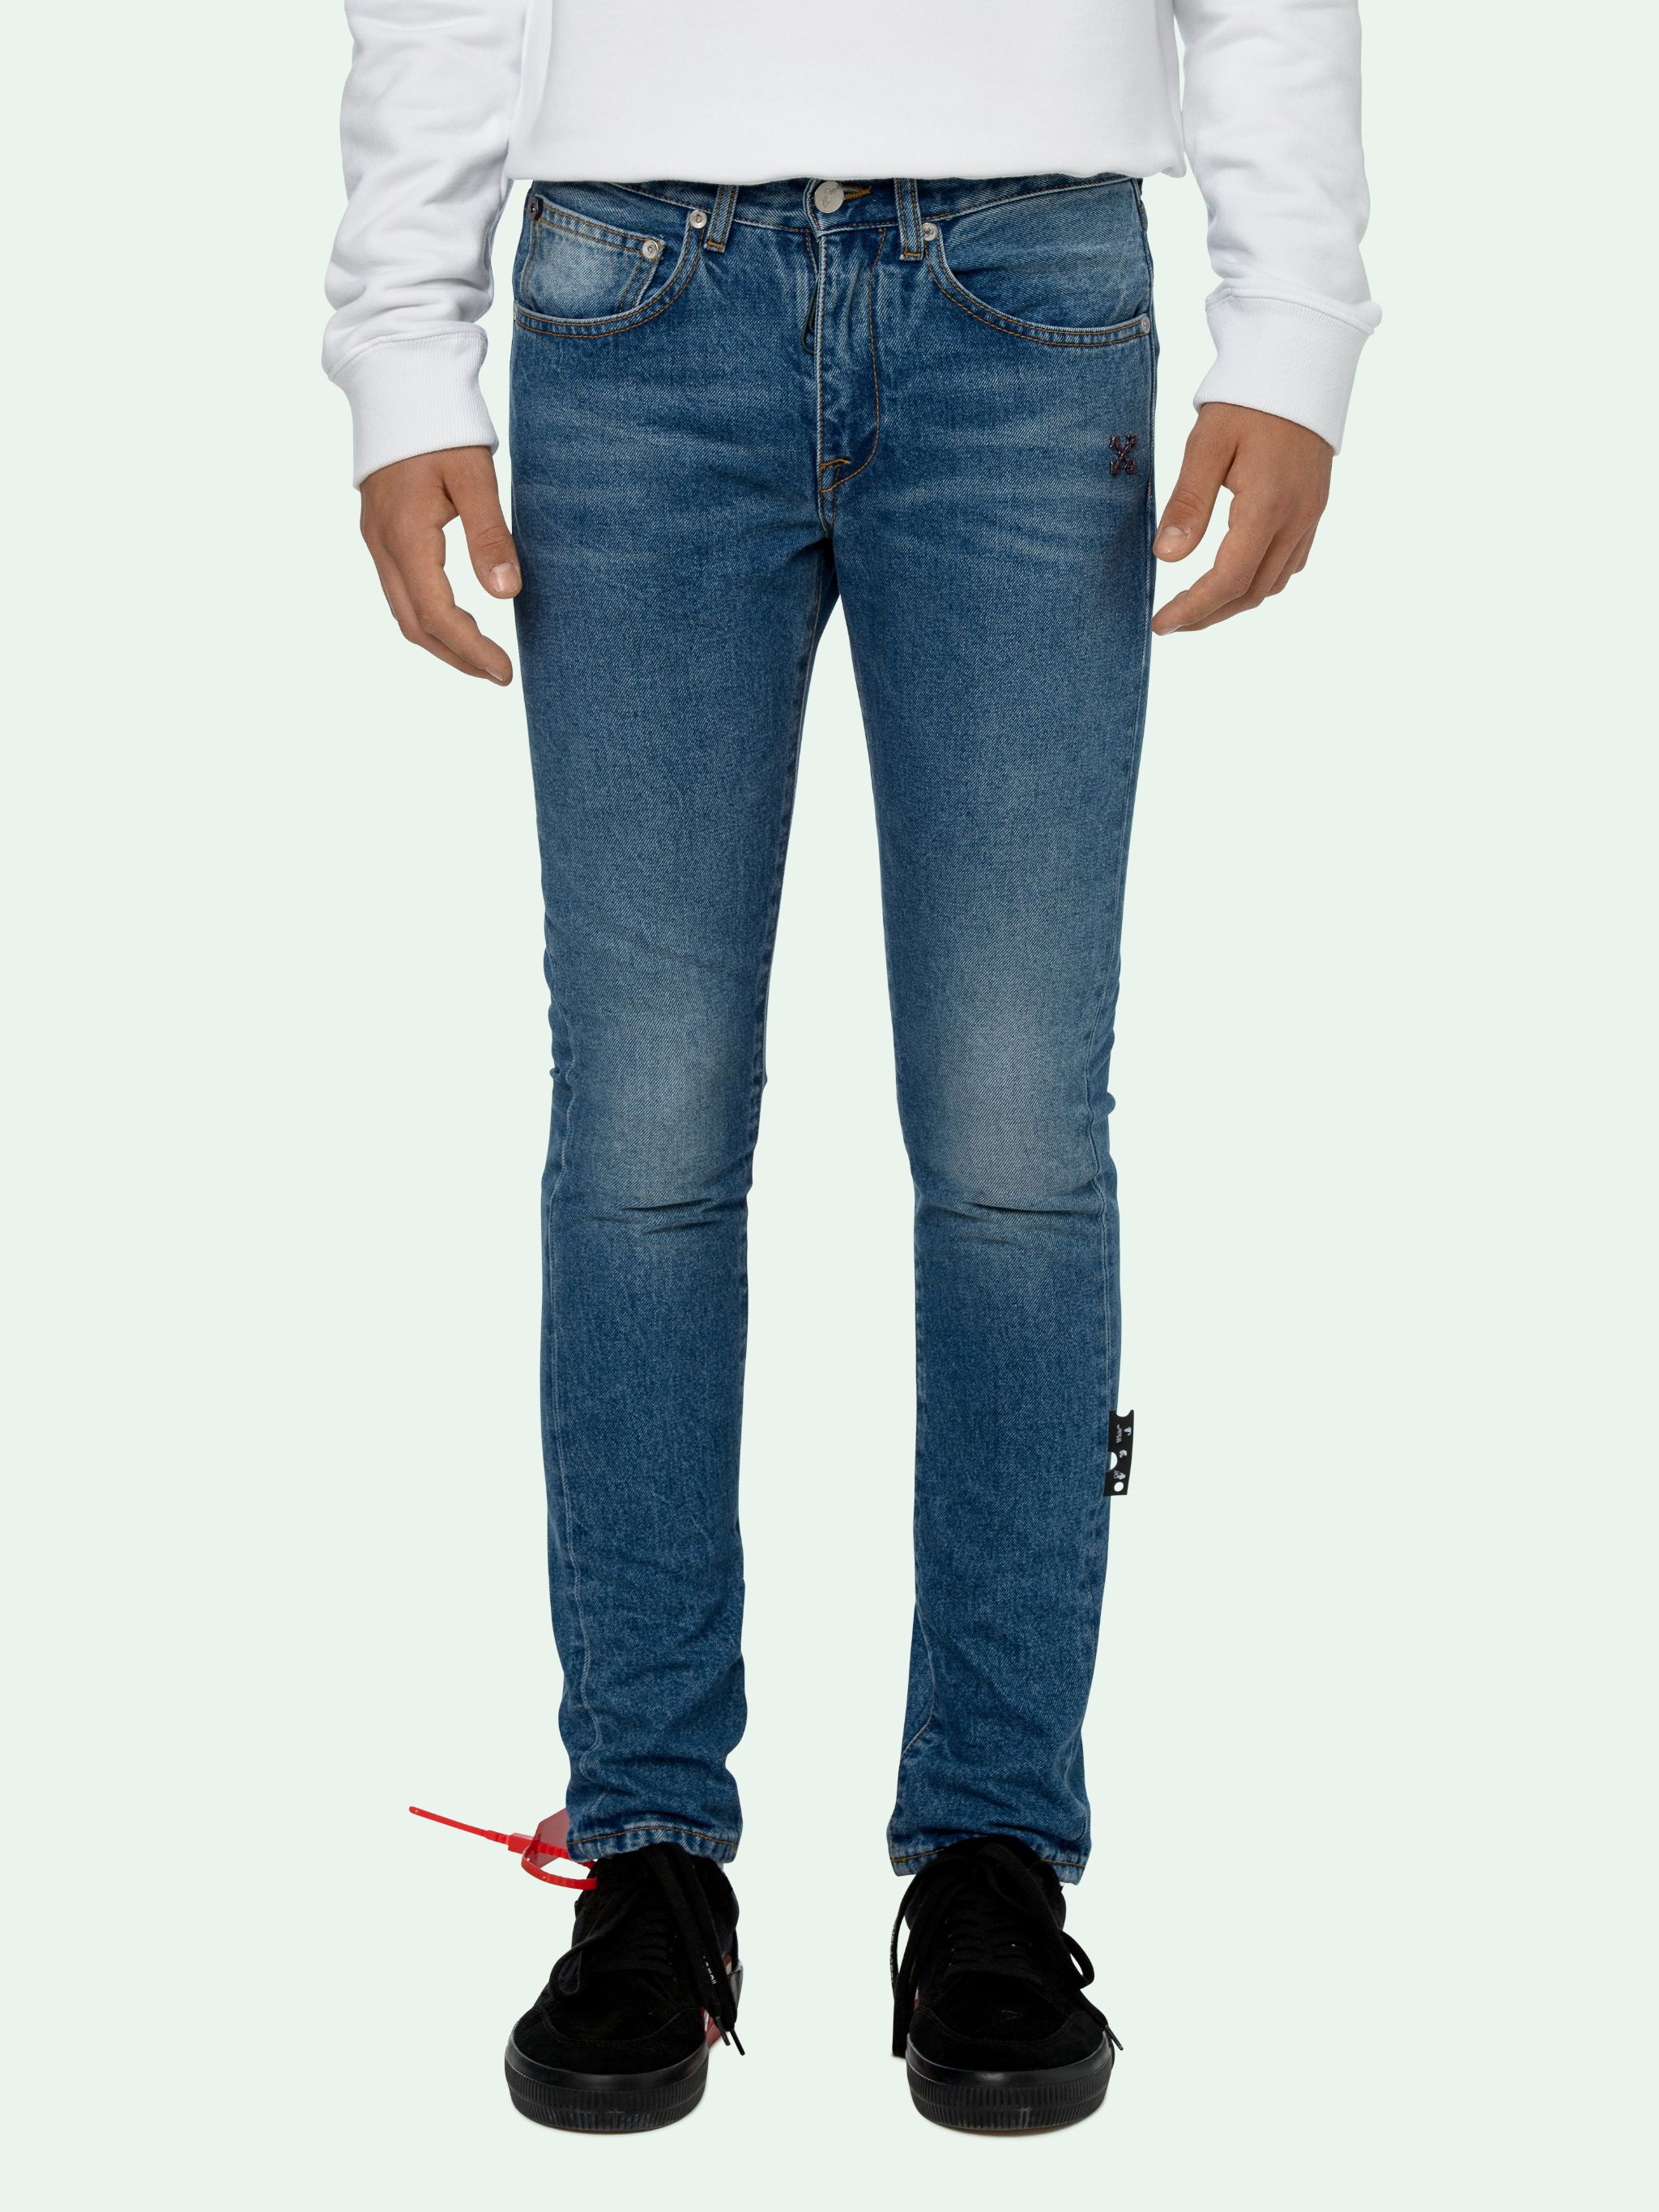 mens designer jeans brands